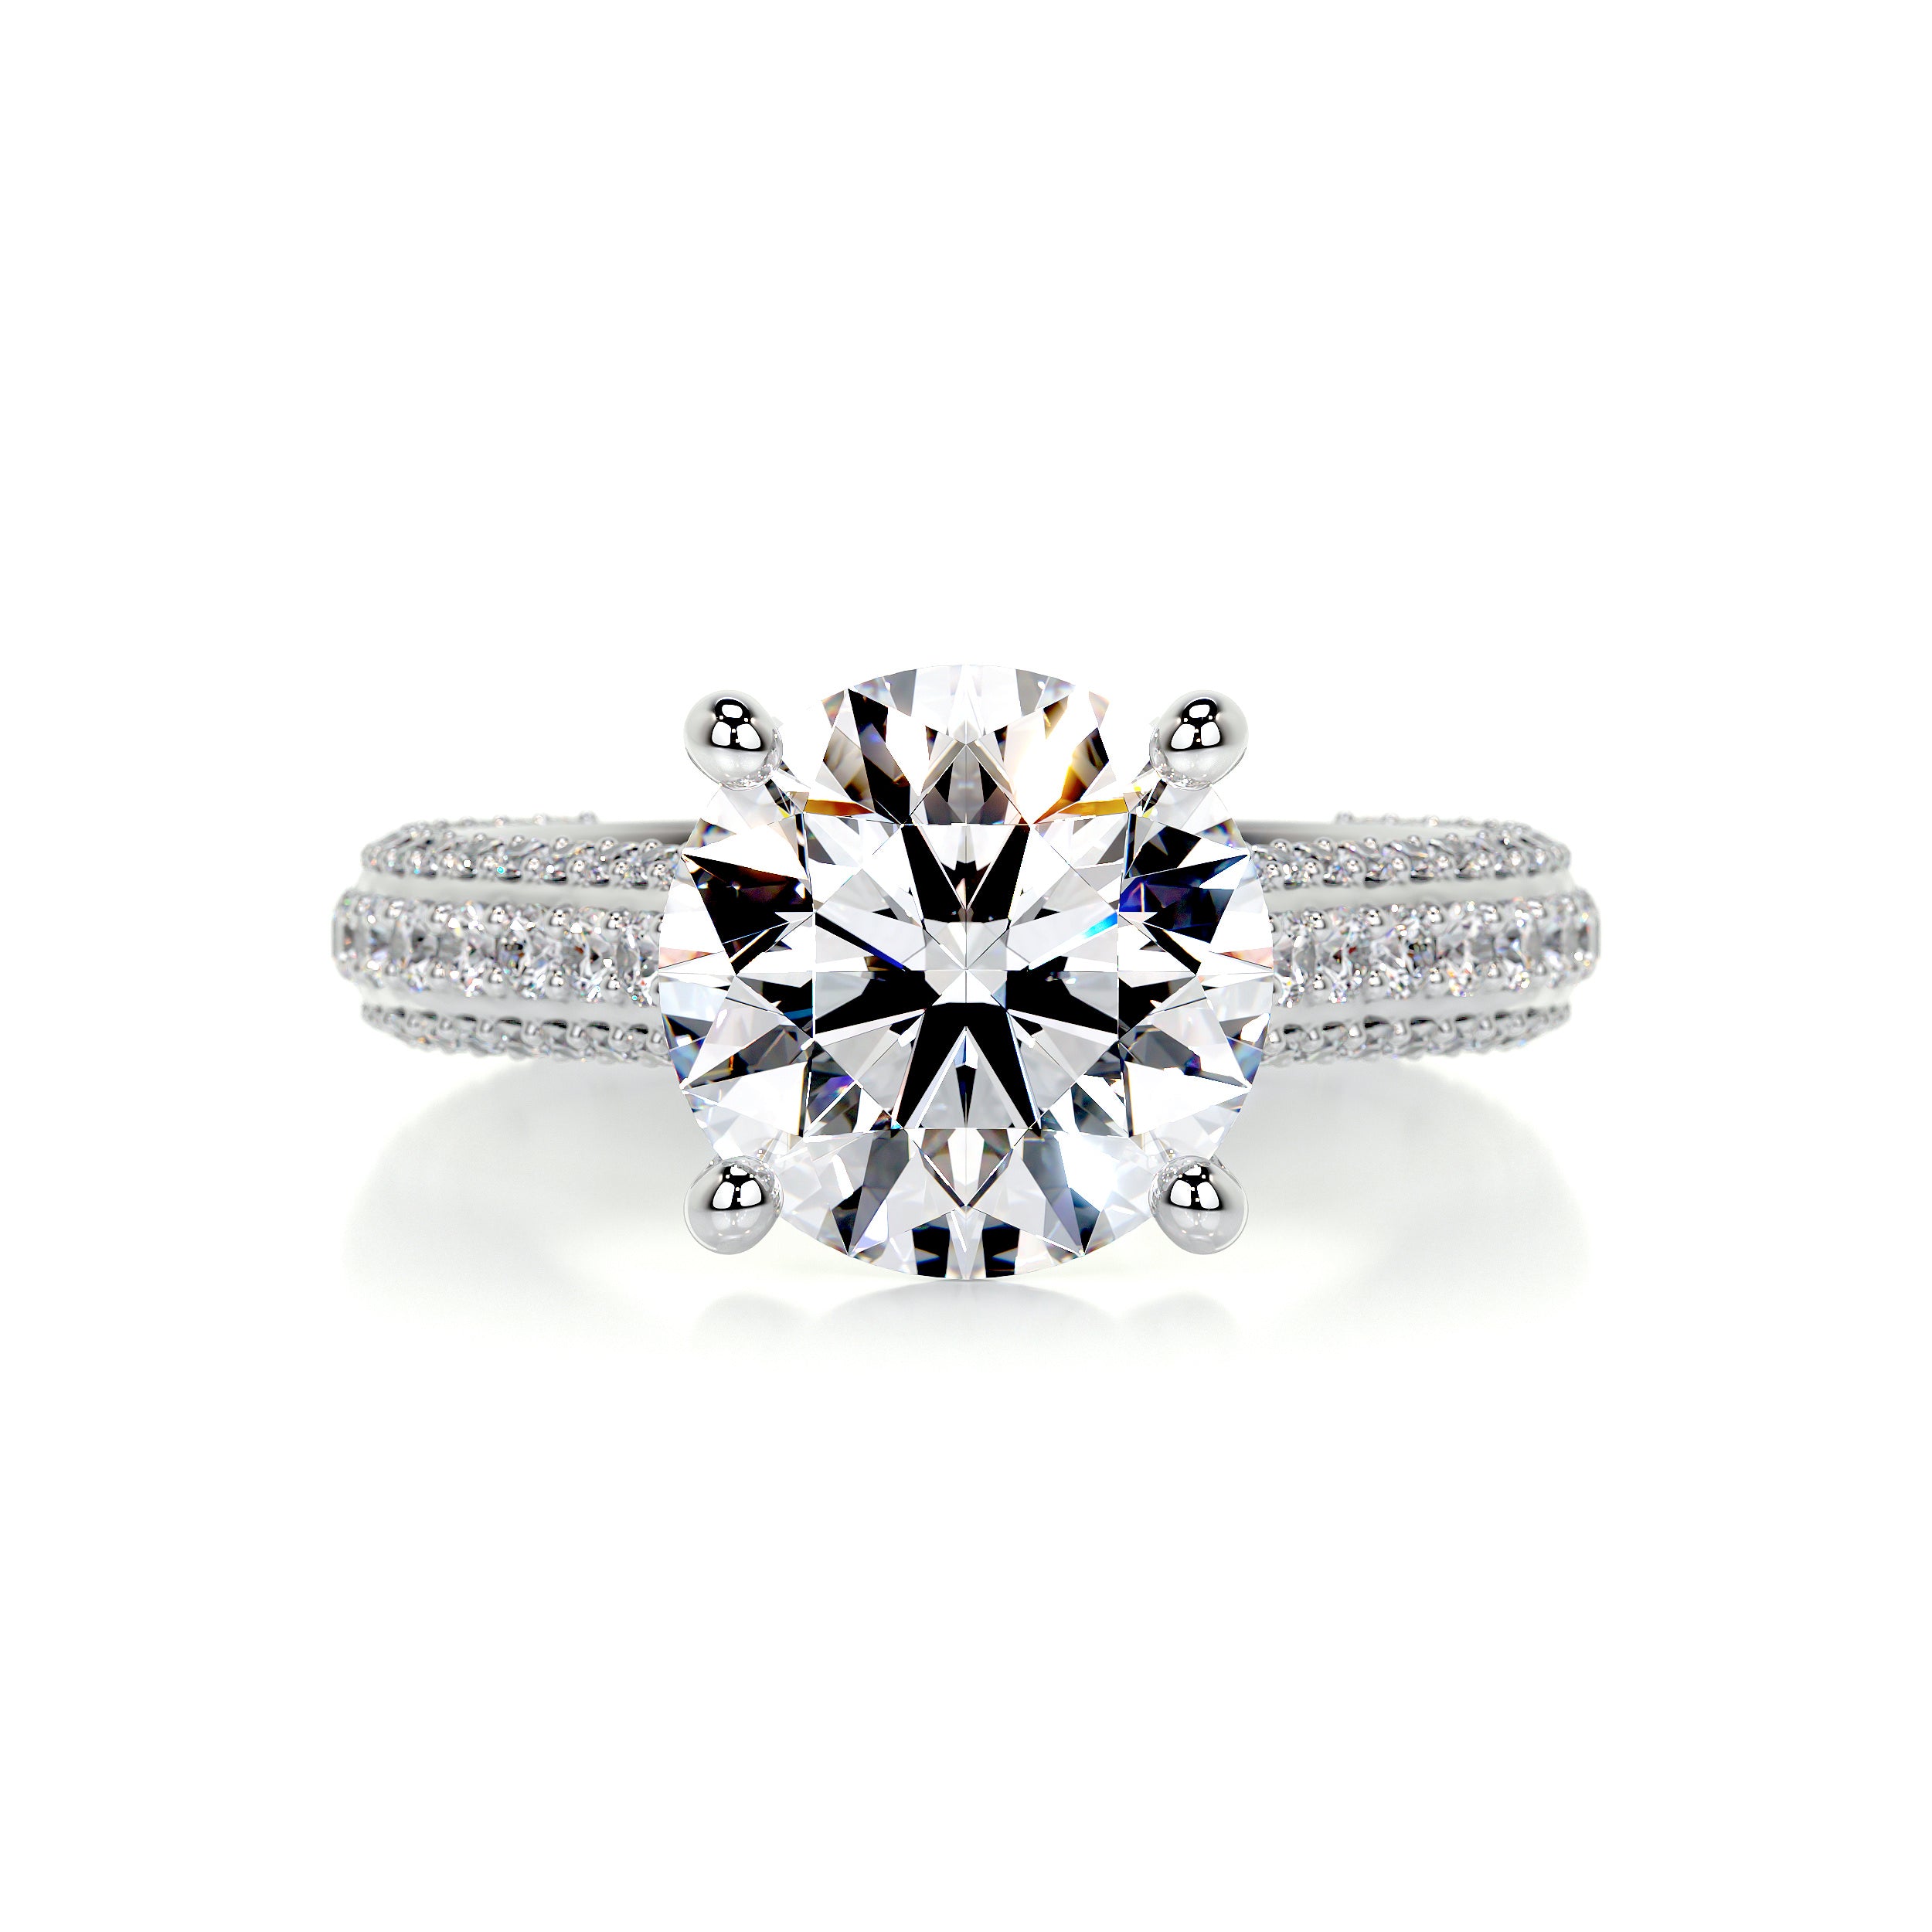 Janet Diamond Engagement Ring   (3.5 Carat) -14K White Gold